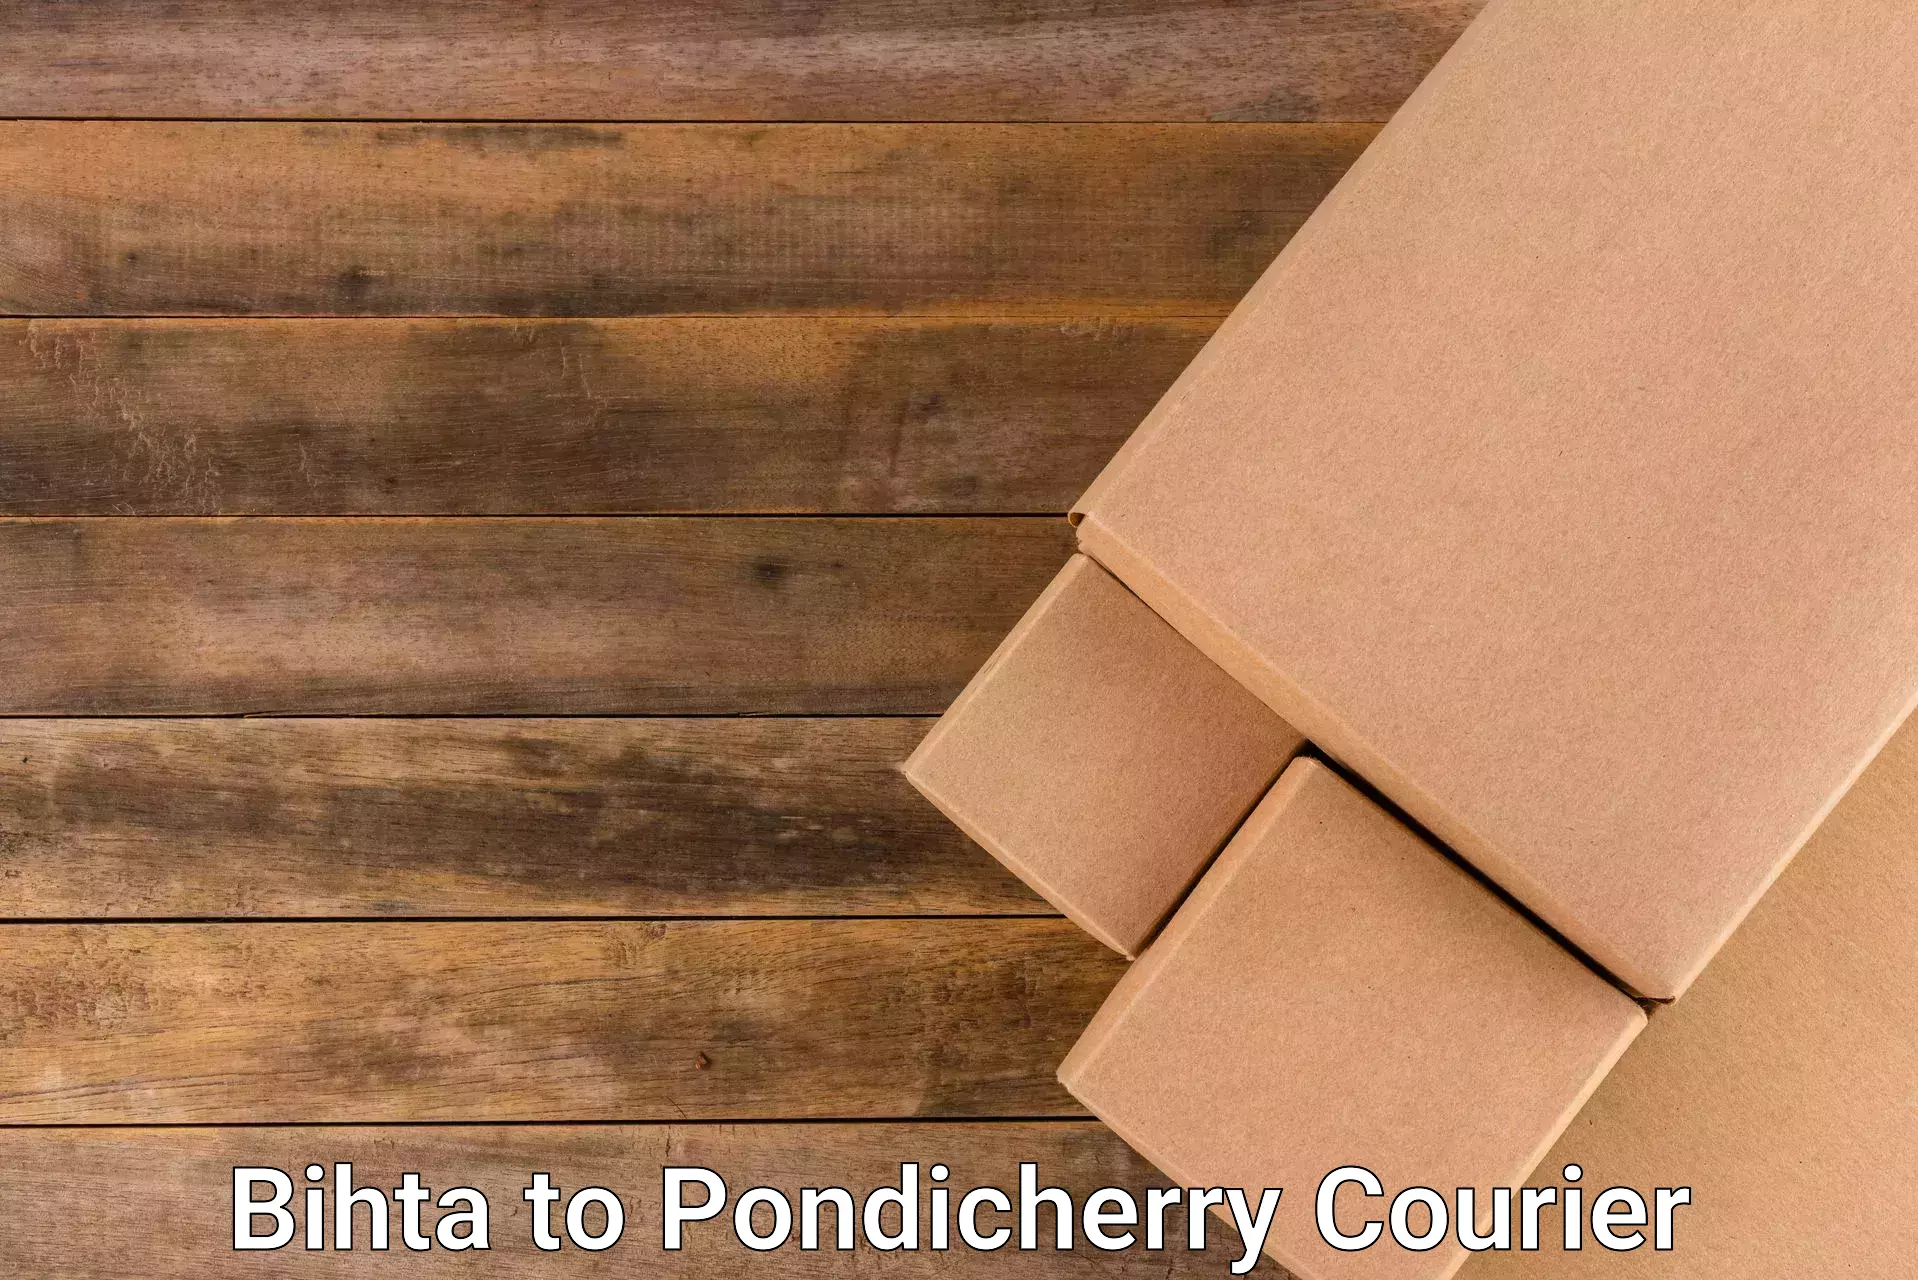 Urgent courier needs Bihta to Pondicherry